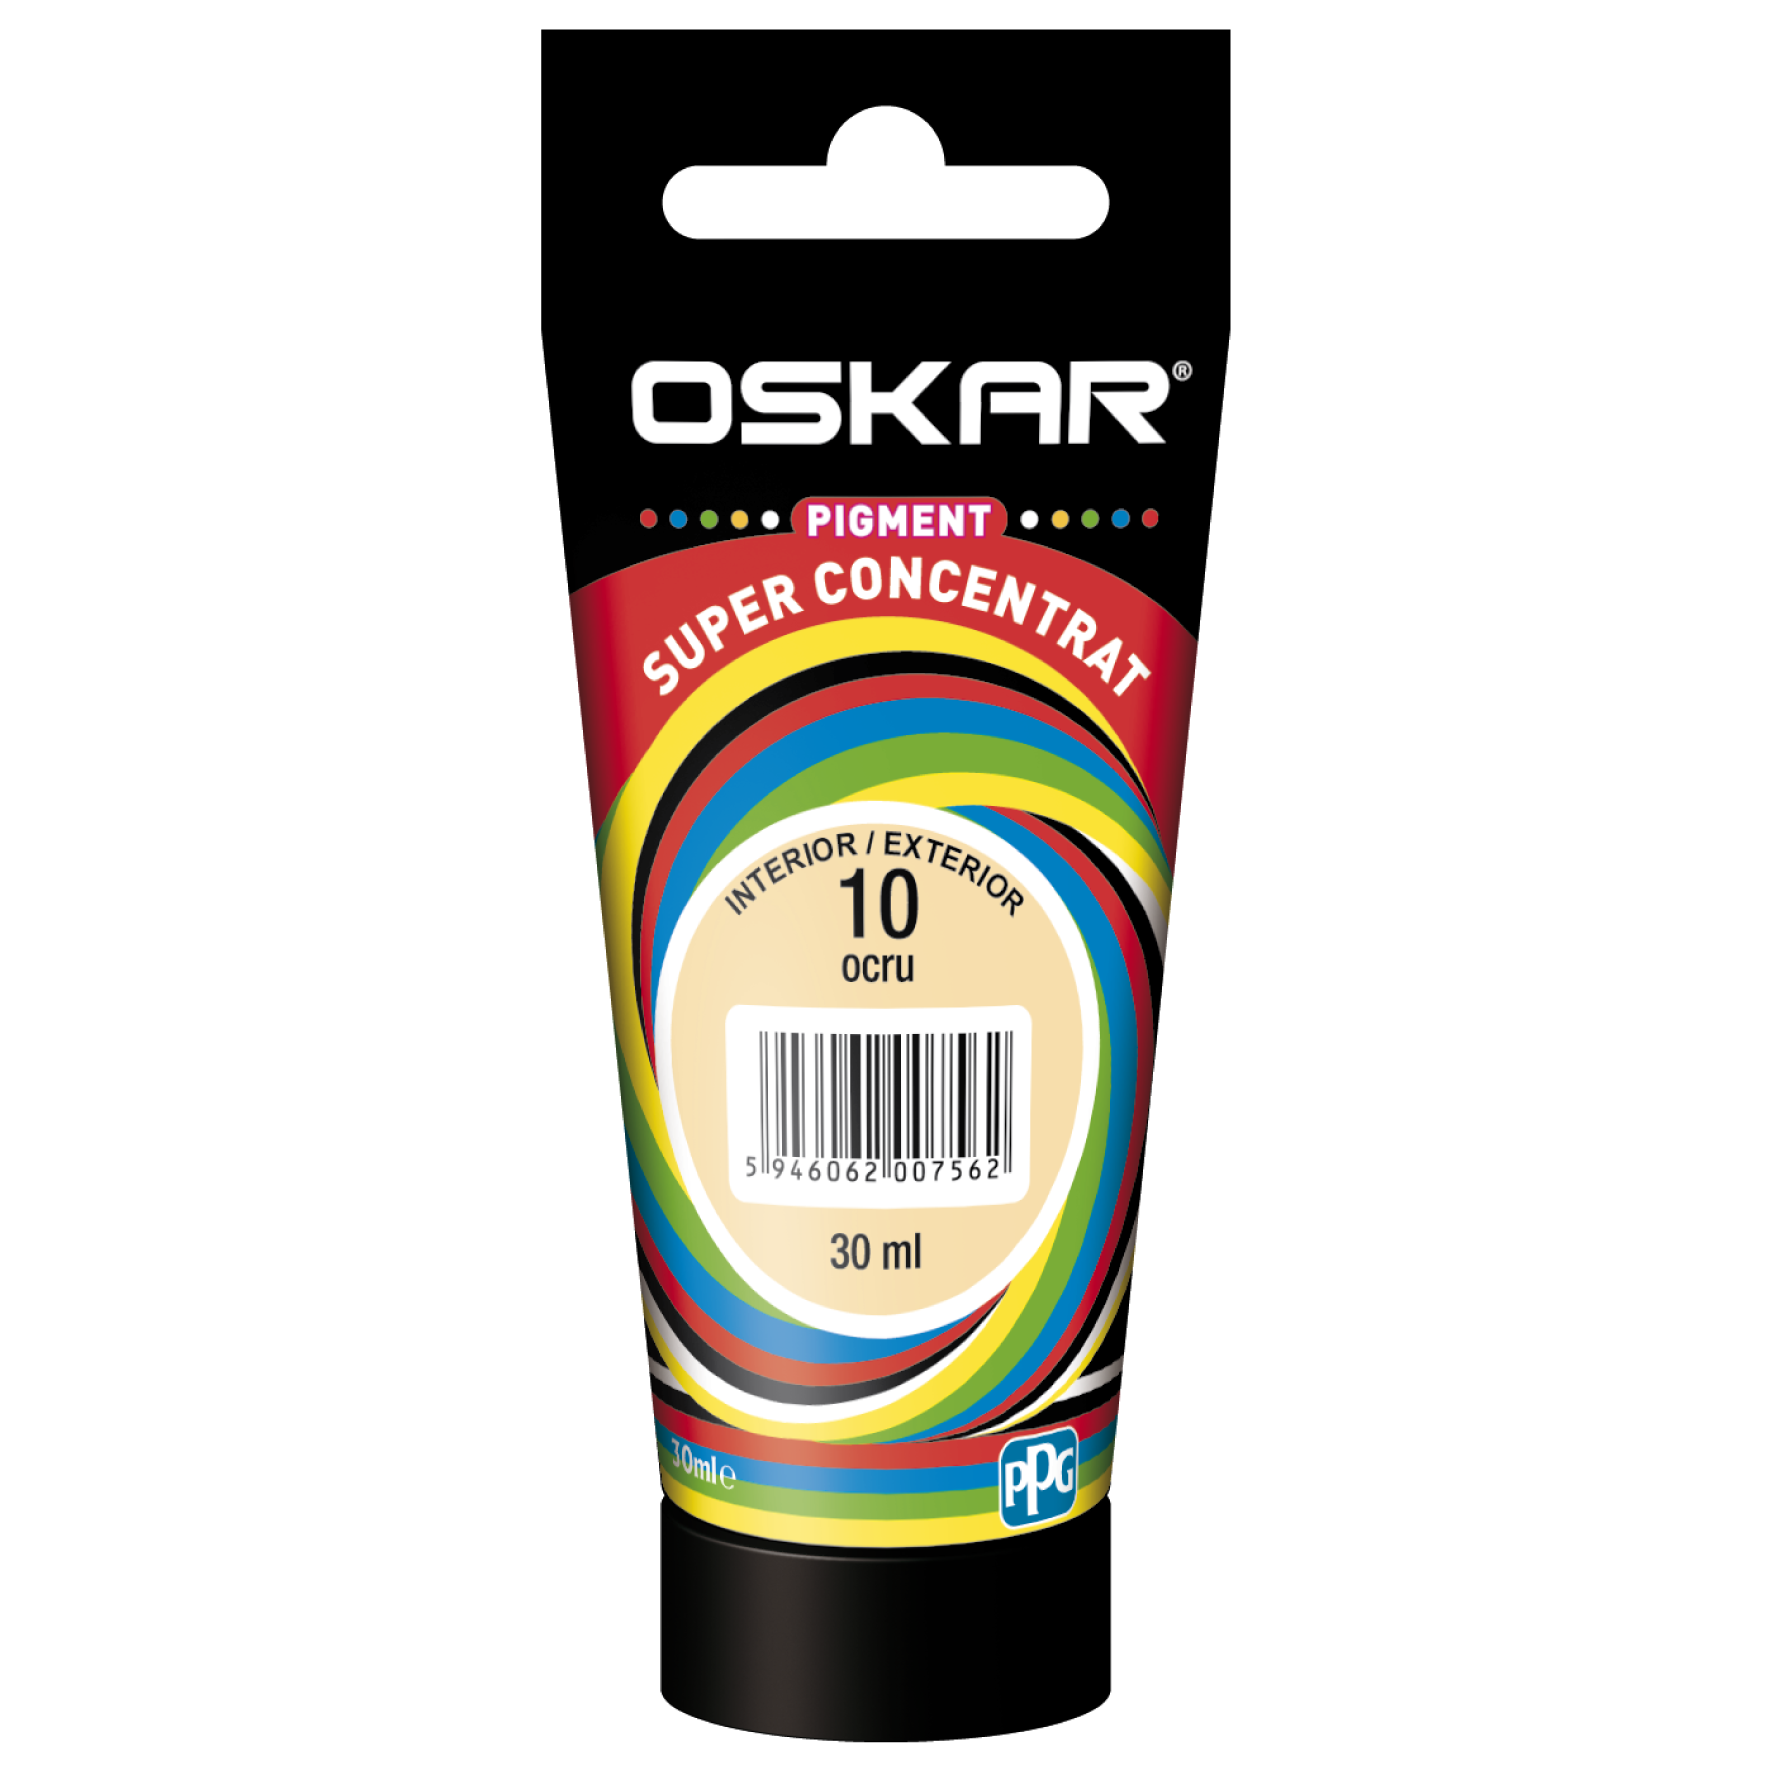 Pigment vopsea lavabila Oskar super concentrat, ocru 10, 30 ml 10